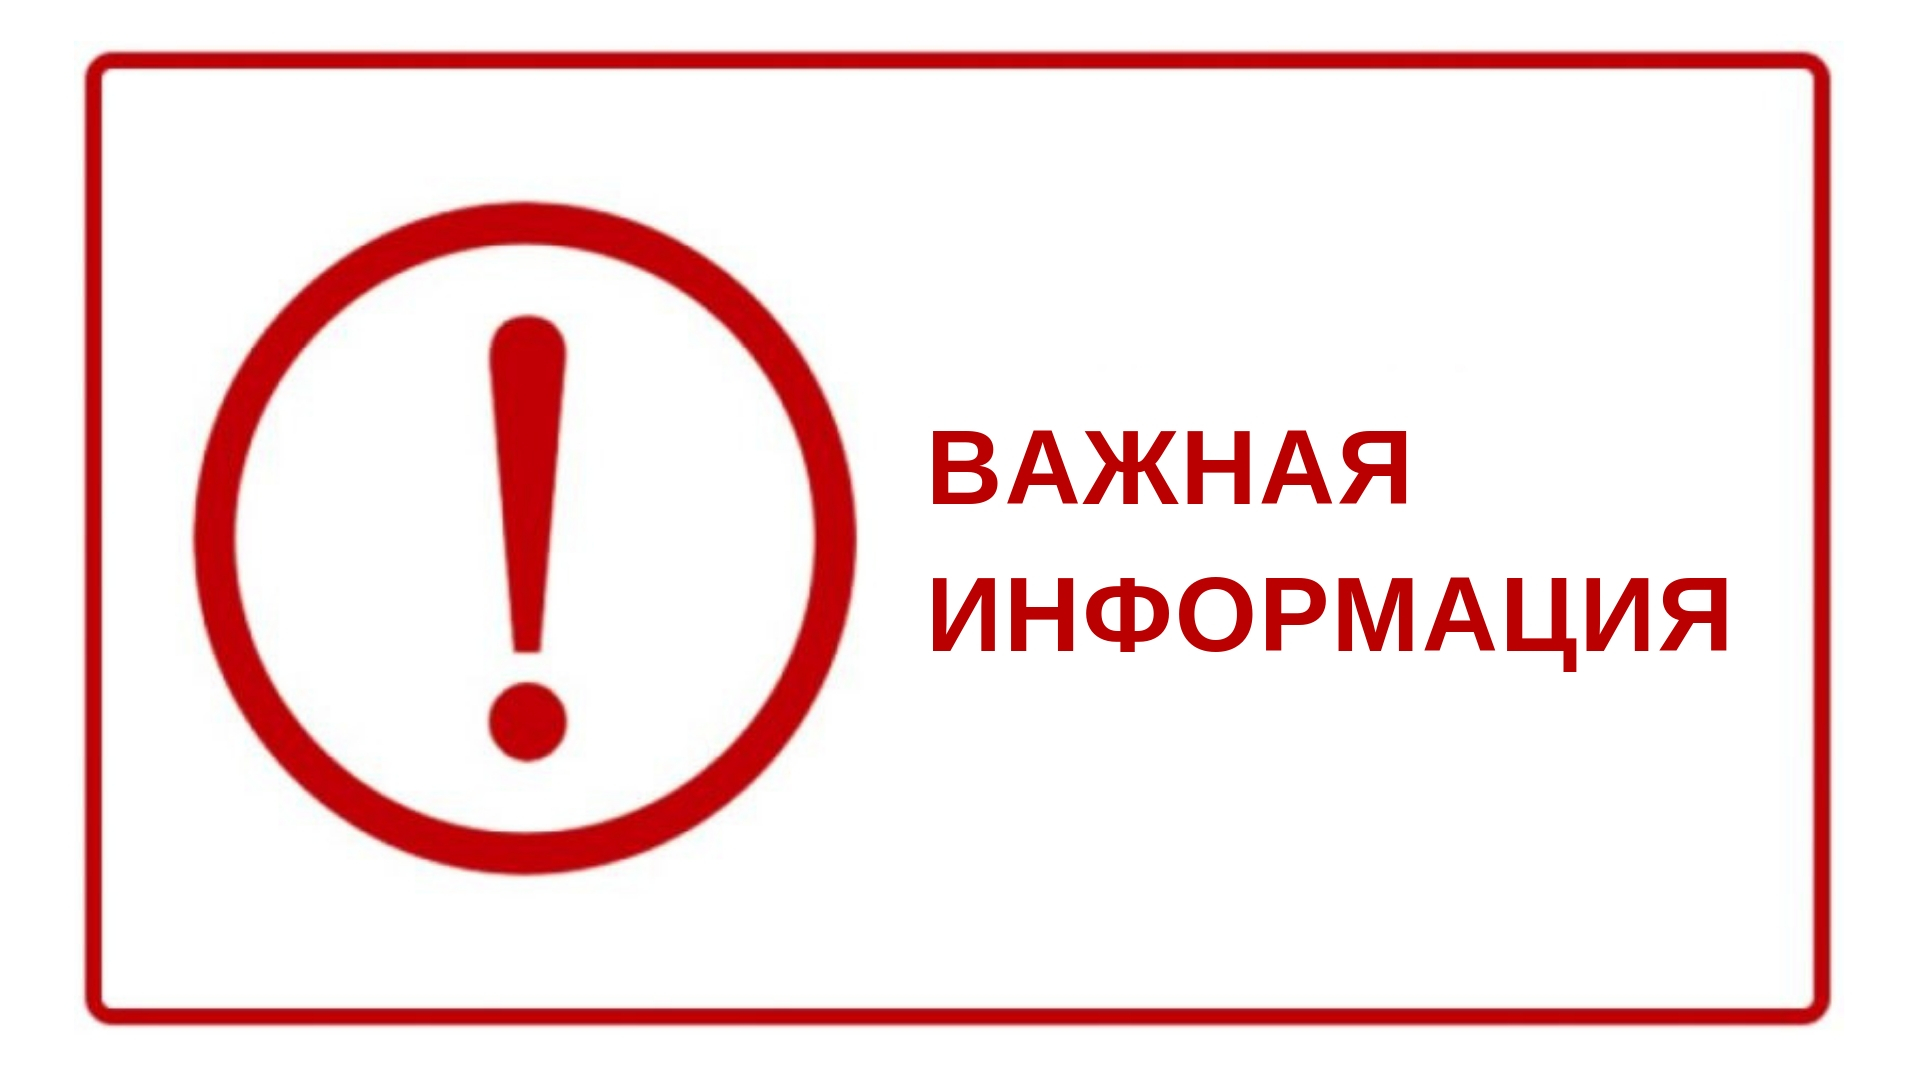 В правила противопожарного режима в Российской Федерации внесены изменения.